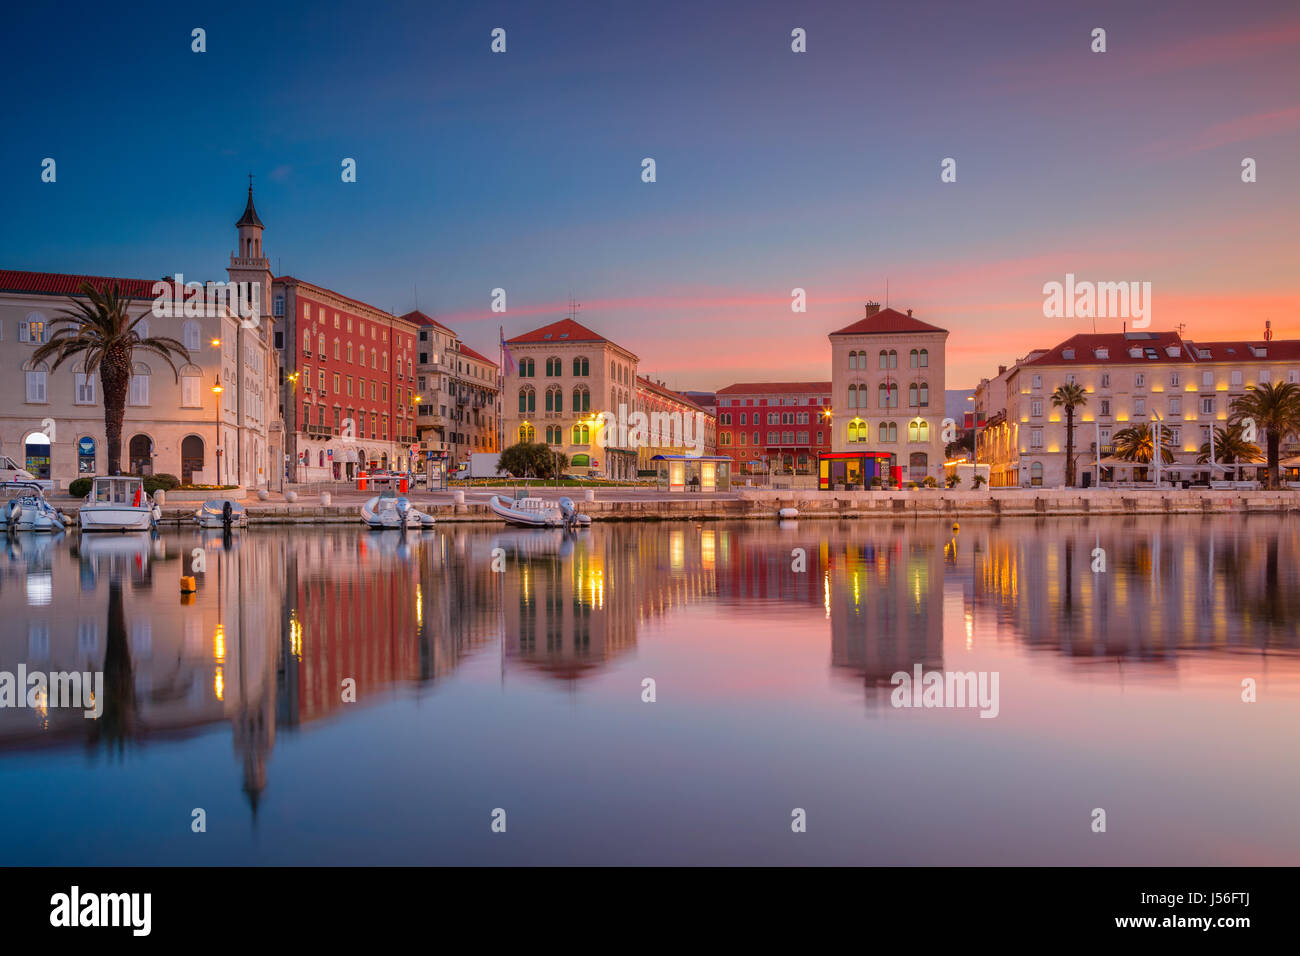 Split. Belle romantique vieille ville de Split au cours de beau lever de soleil. La Croatie, l'Europe. Banque D'Images